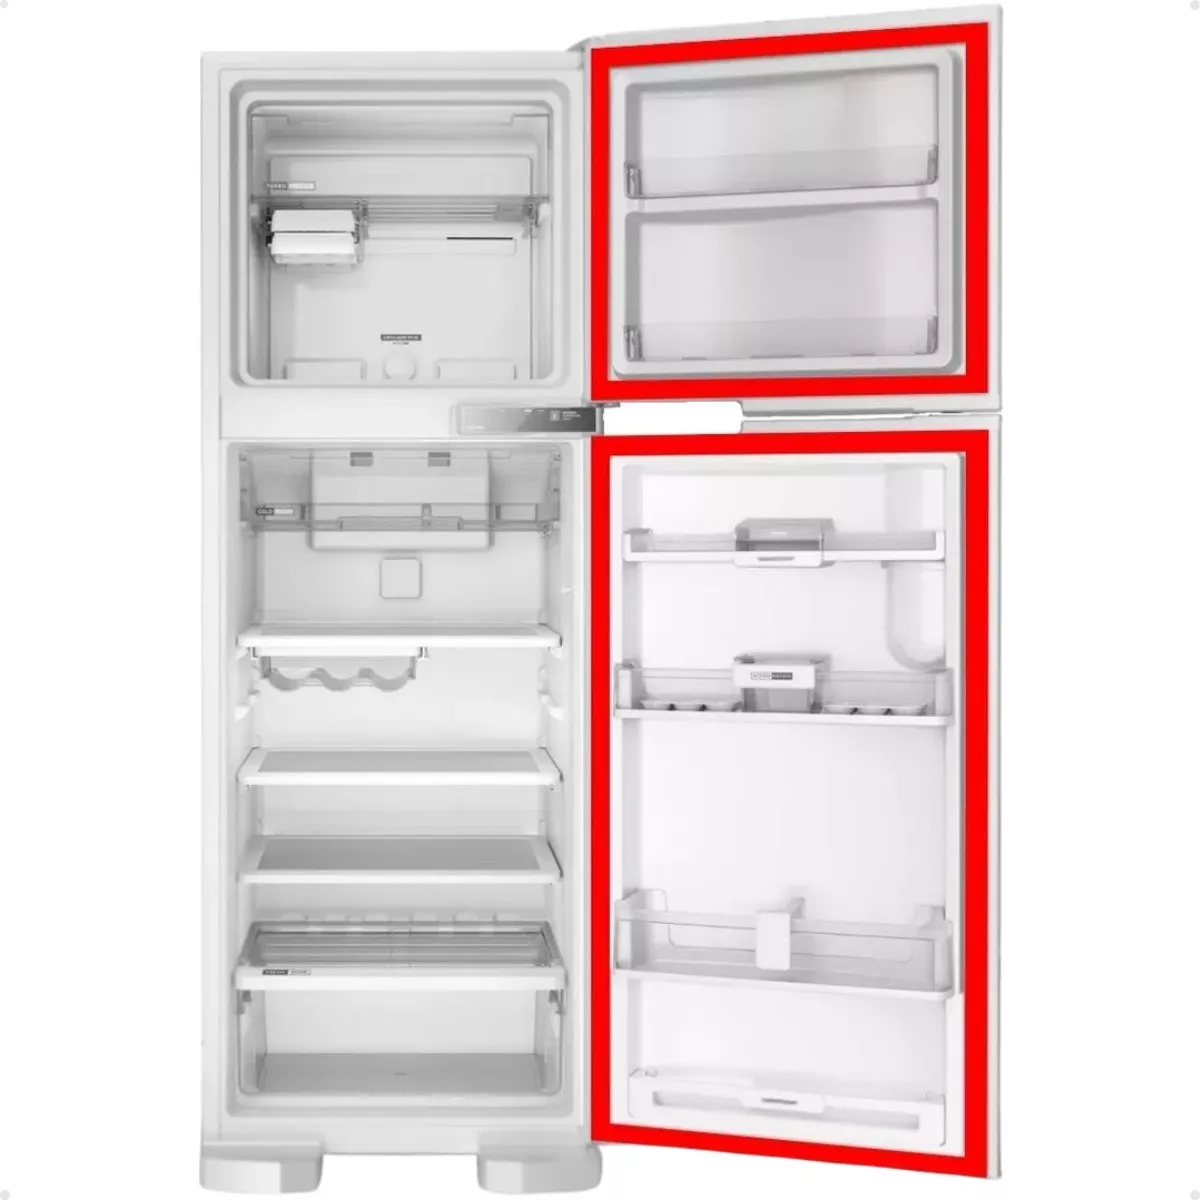 Primeira imagem para pesquisa de gaxeta refrigerador electrolux rfe39